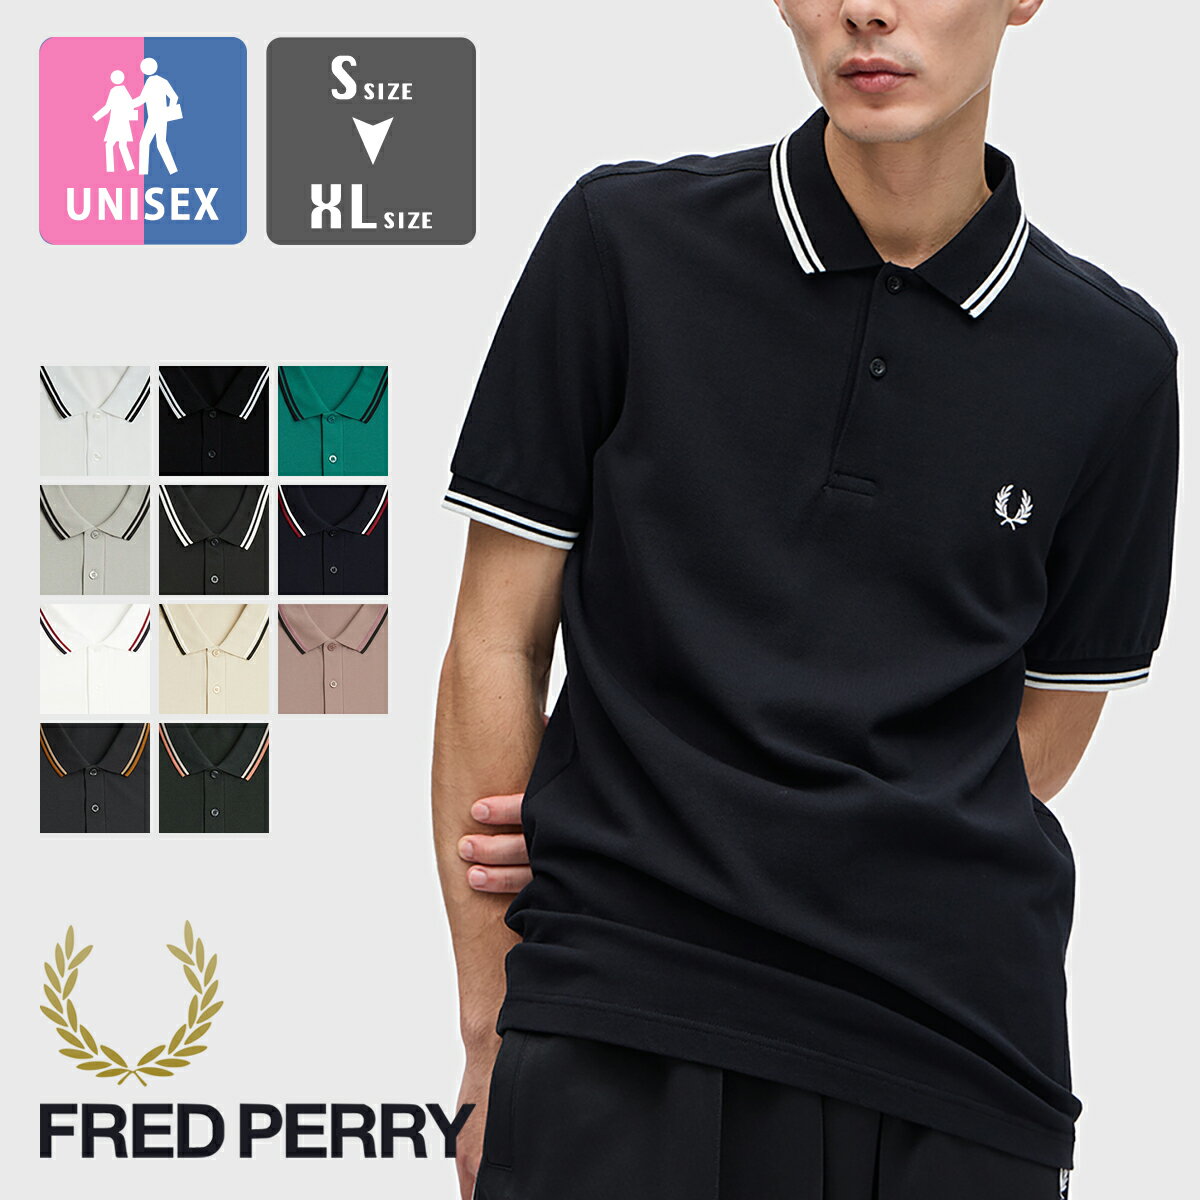 フレッドペリー 【 FRED PERRY フレッドペリー 】 The Fred Perry Shirt ツインティップ S/S ポロシャツ M3600 / 半袖 襟ライン ワンポイント 鹿の子 ストリームラインフィット メンズ レディース ユニセックス 2024SUMMER/